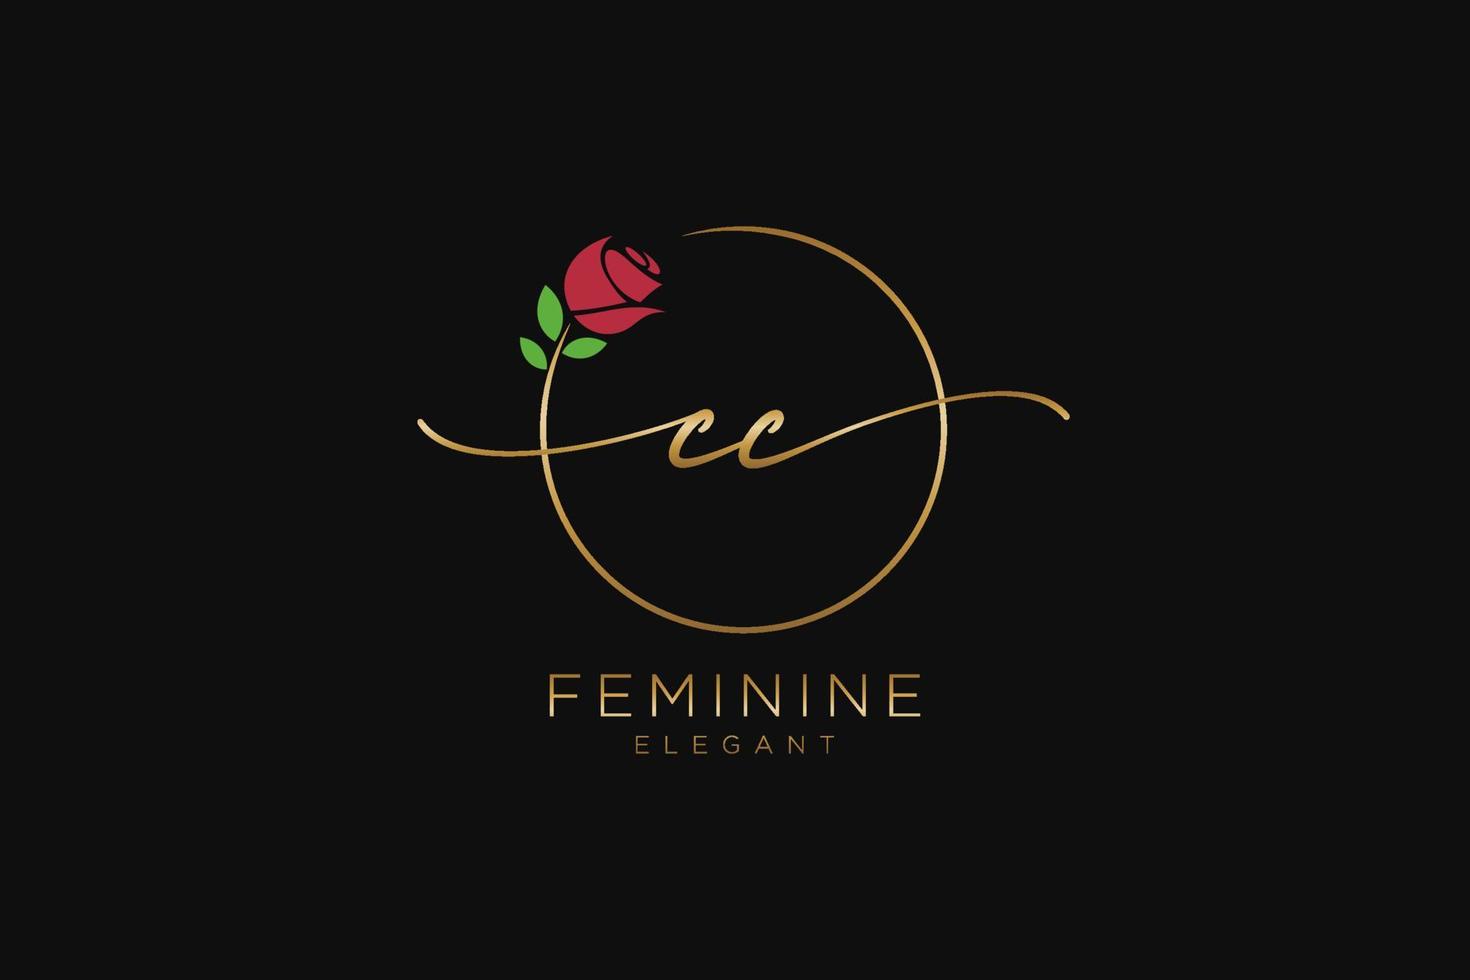 anfängliches cc-feminines Logo-Schönheitsmonogramm und elegantes Logo-Design, Handschrift-Logo der Erstunterschrift, Hochzeit, Mode, Blumen und Pflanzen mit kreativer Vorlage. vektor